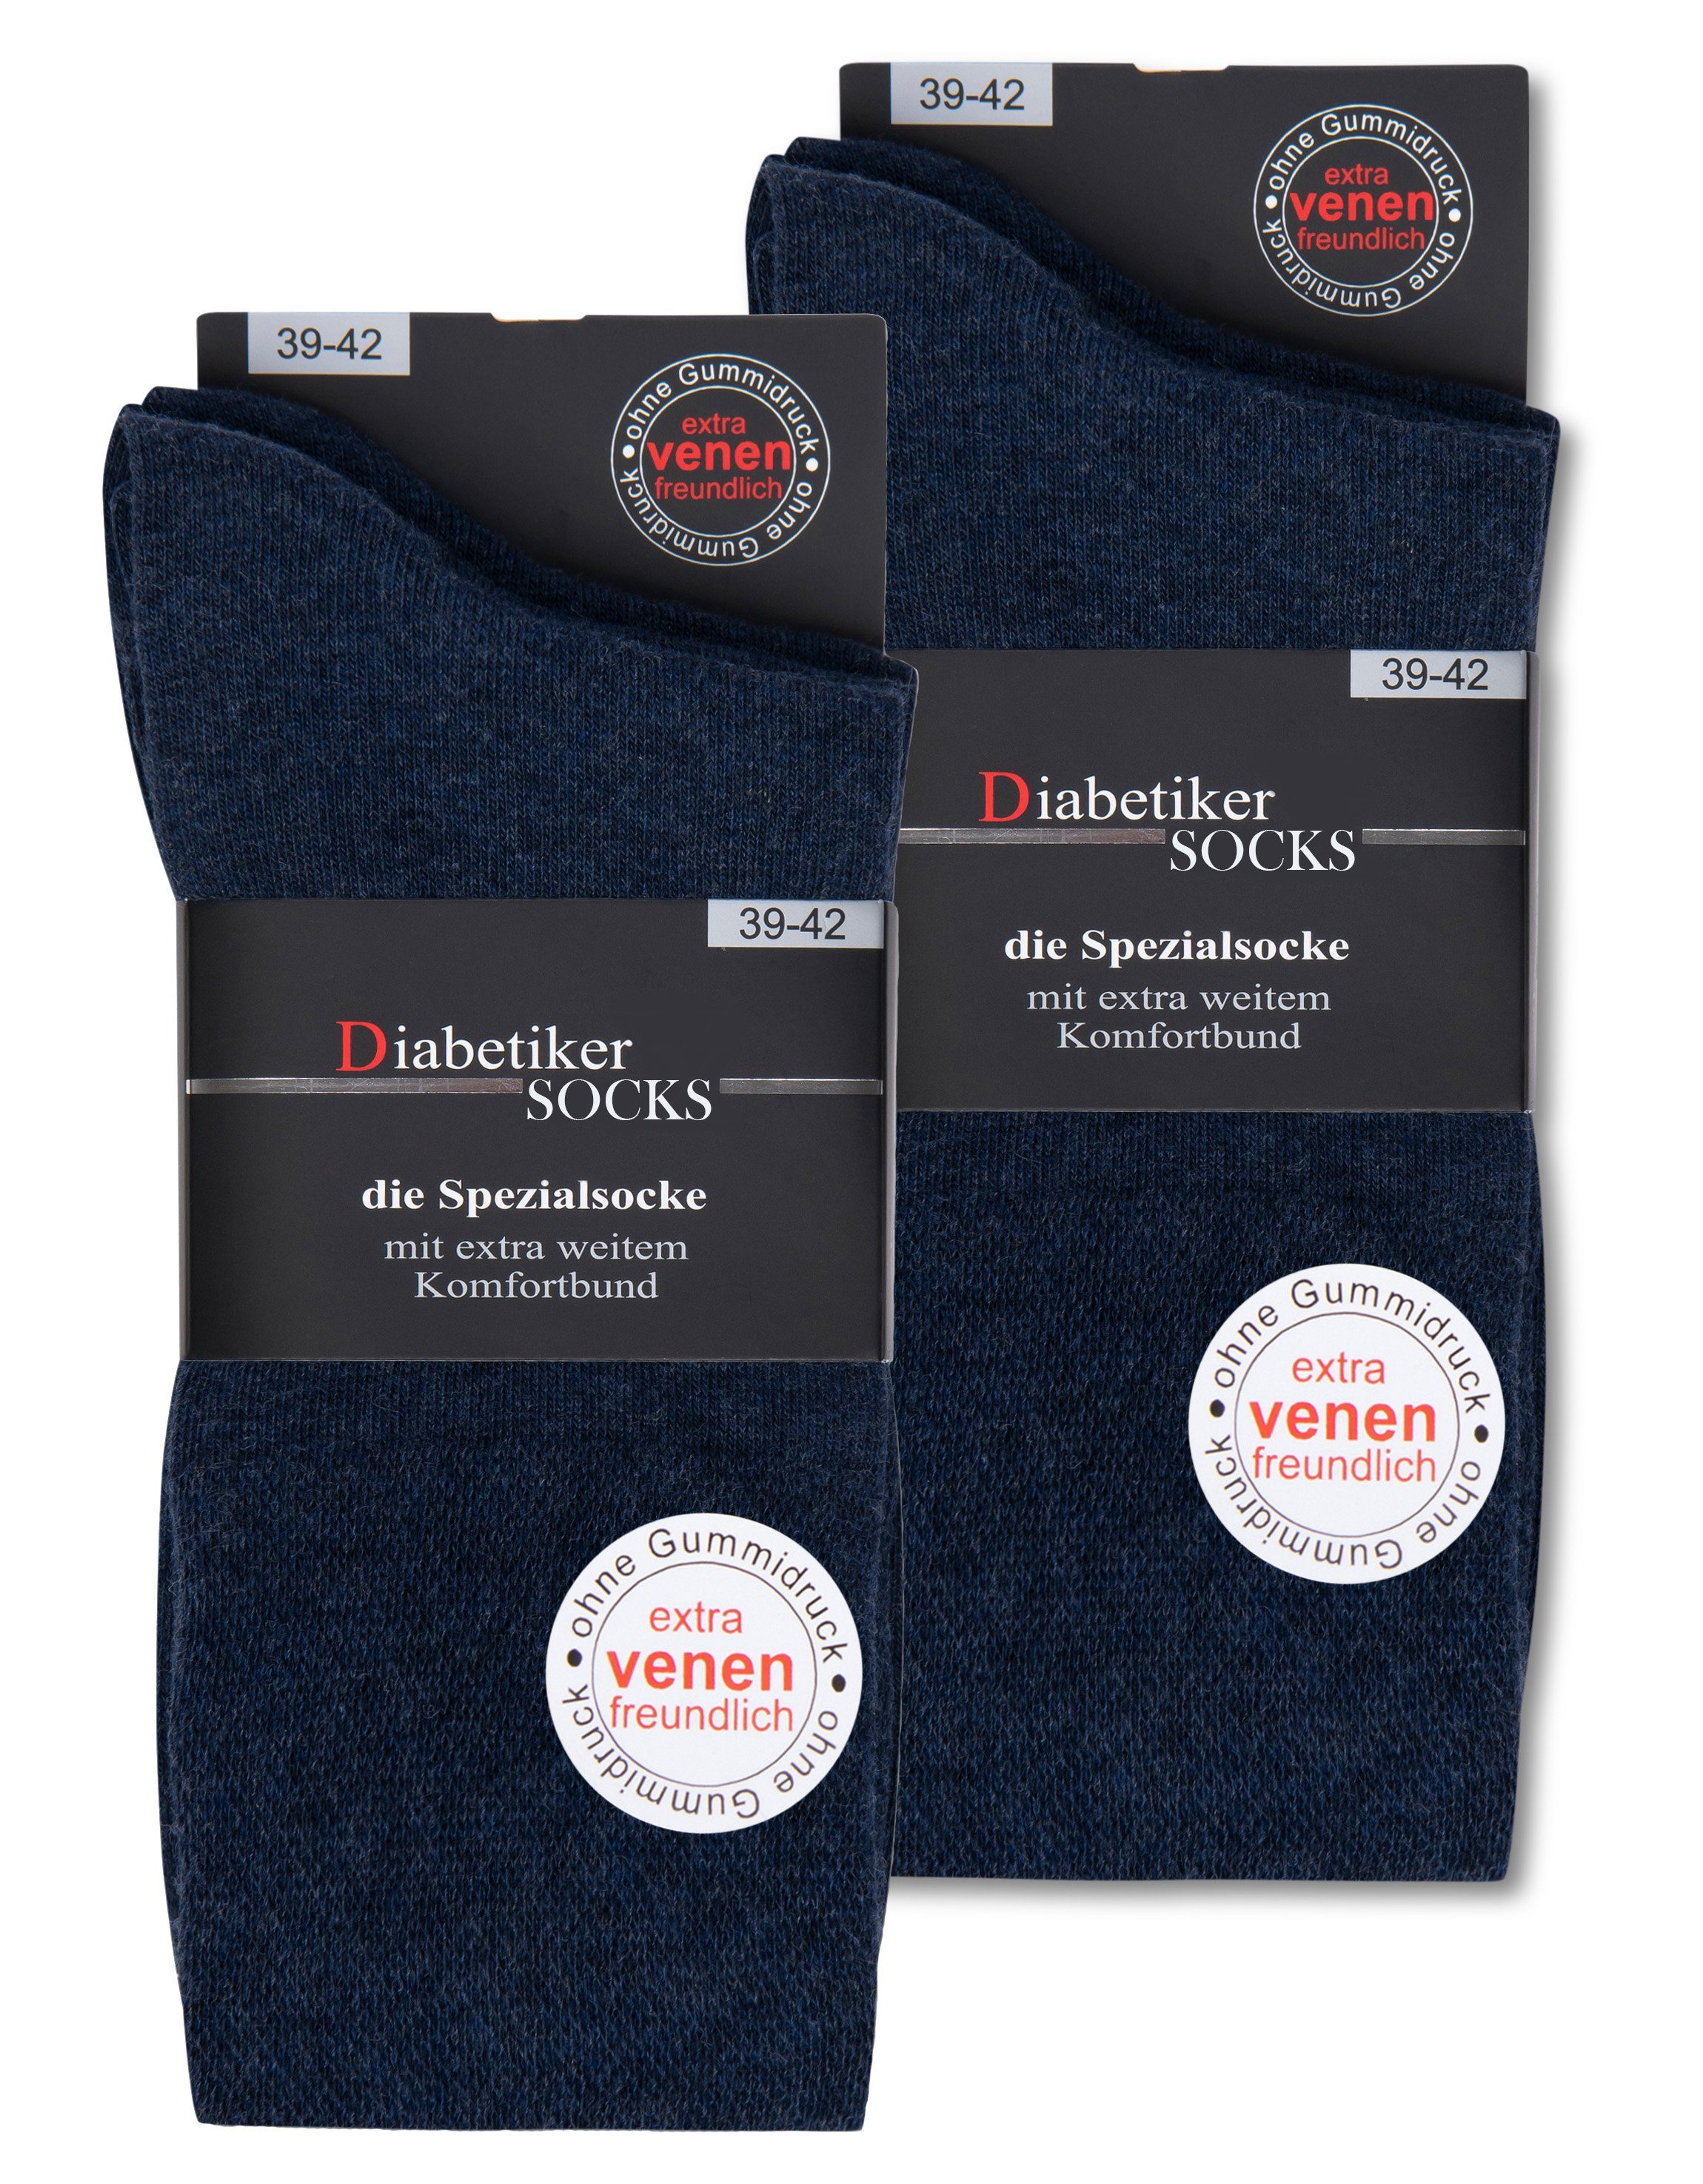 sockenkauf24 Diabetikersocken 6 Paar Damen & Herren Socken mit Komfortbund  (Jeans, 39-42) ohne Gummi & ohne Naht 97% Baumwolle - 39611 WP